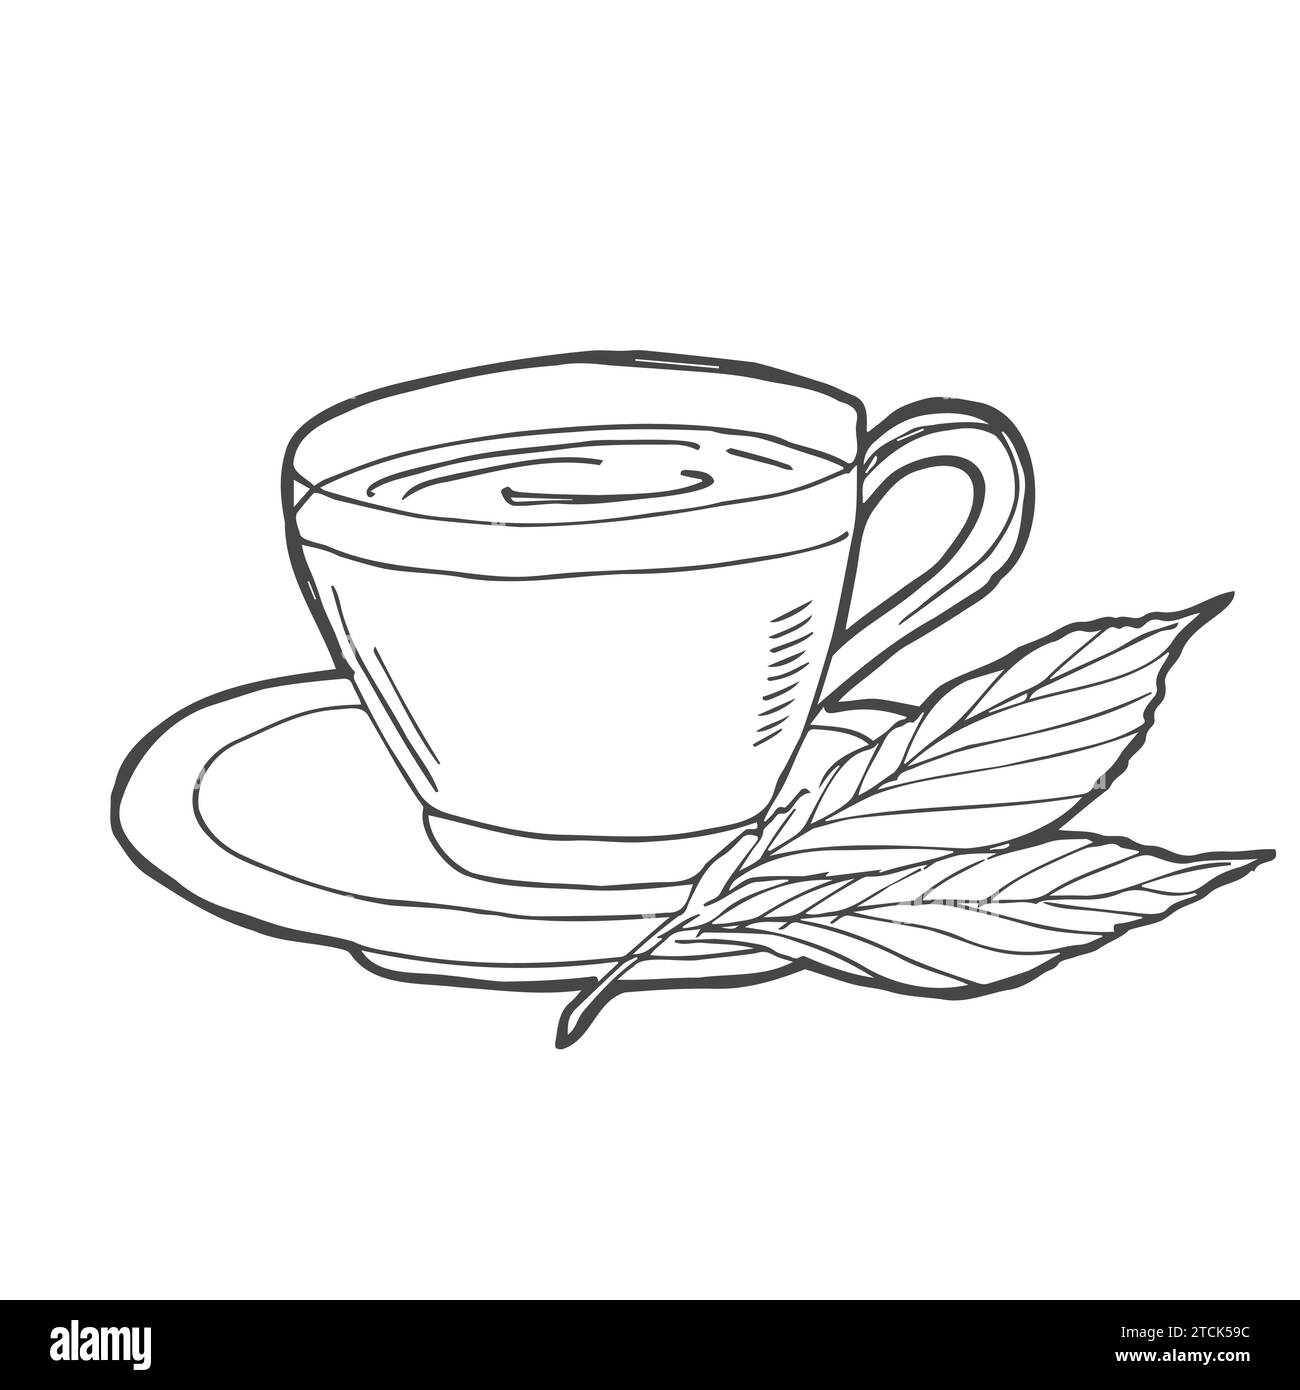 Tazza con bustina di tè disegnata a mano con l'icona del doodle. Bevanda calda - illustrazione dello schizzo vettoriale della tazza da tè per stampa, Web, dispositivi mobili e infografiche isolate su wh Illustrazione Vettoriale